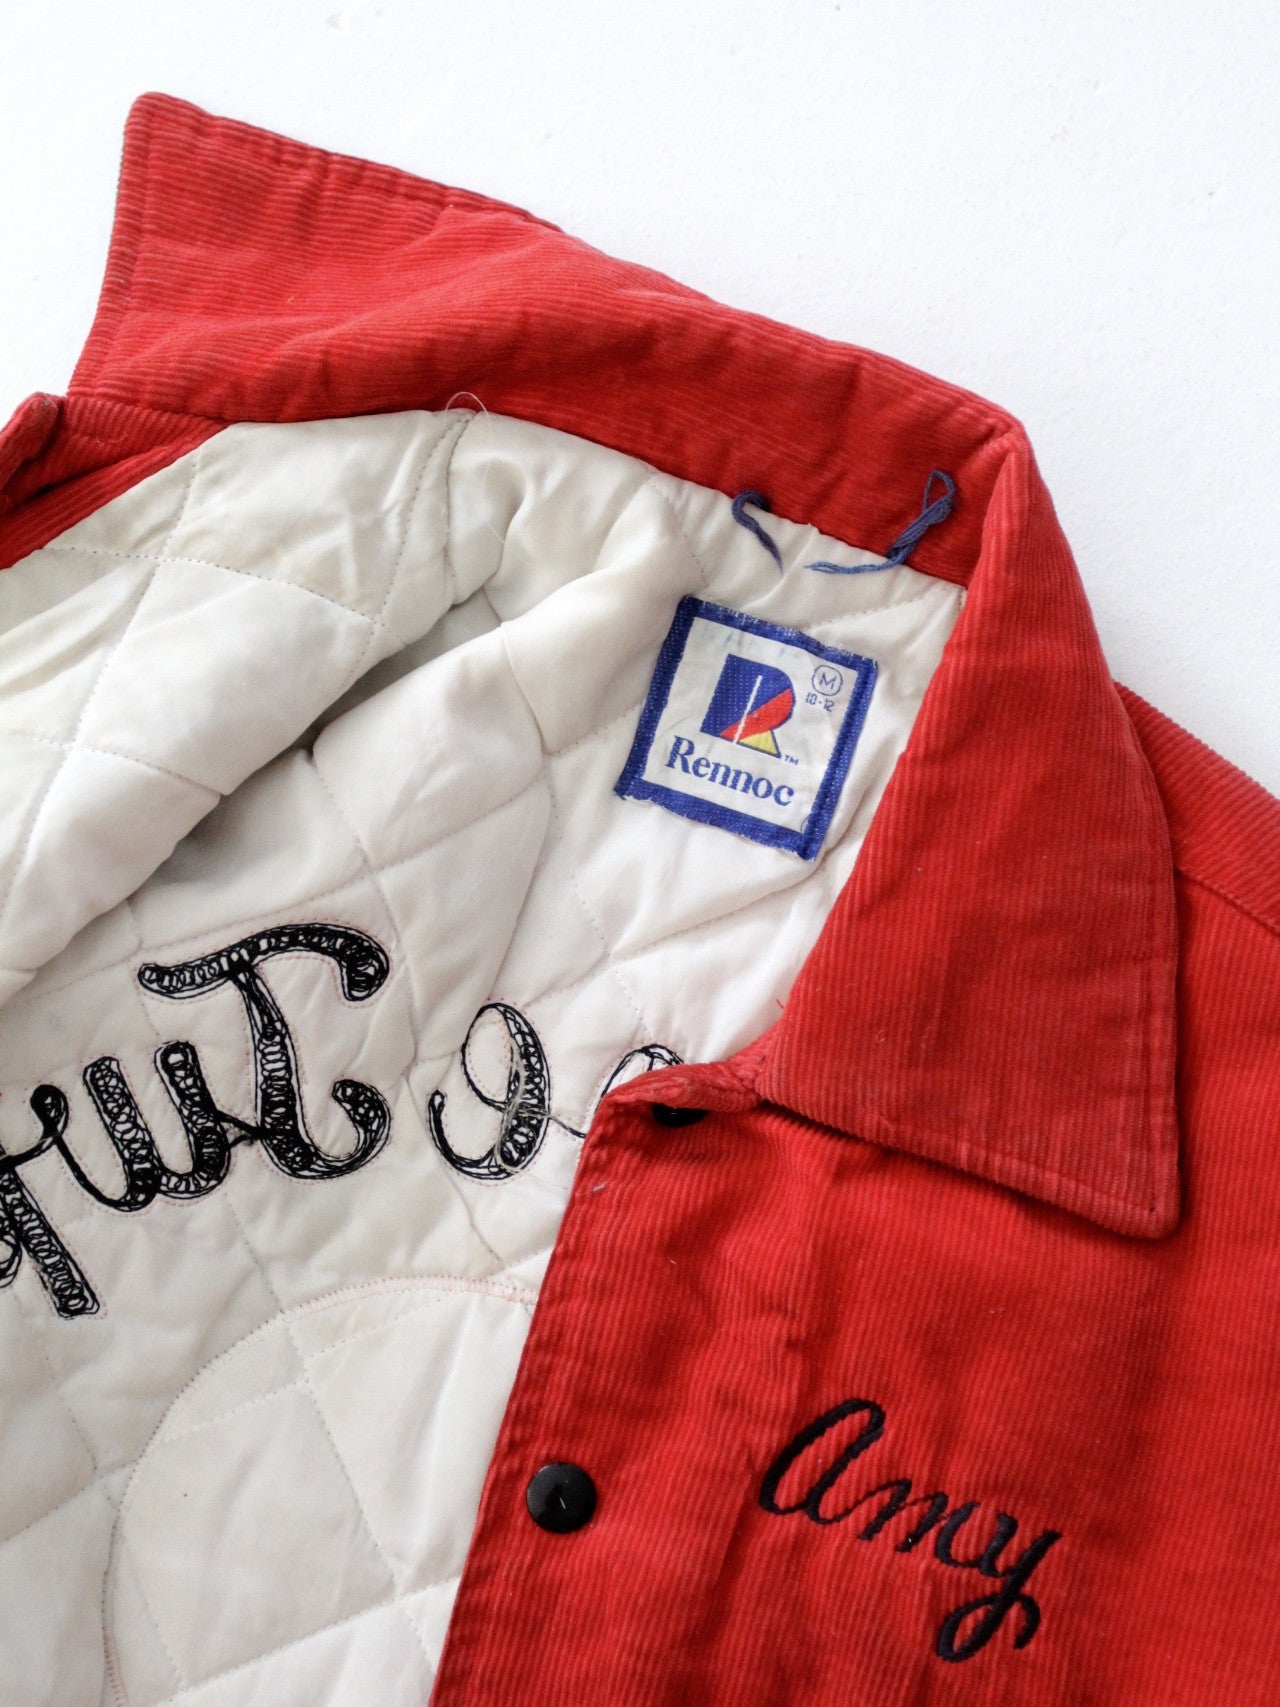 vintage 1980s corduroy soccer jacket